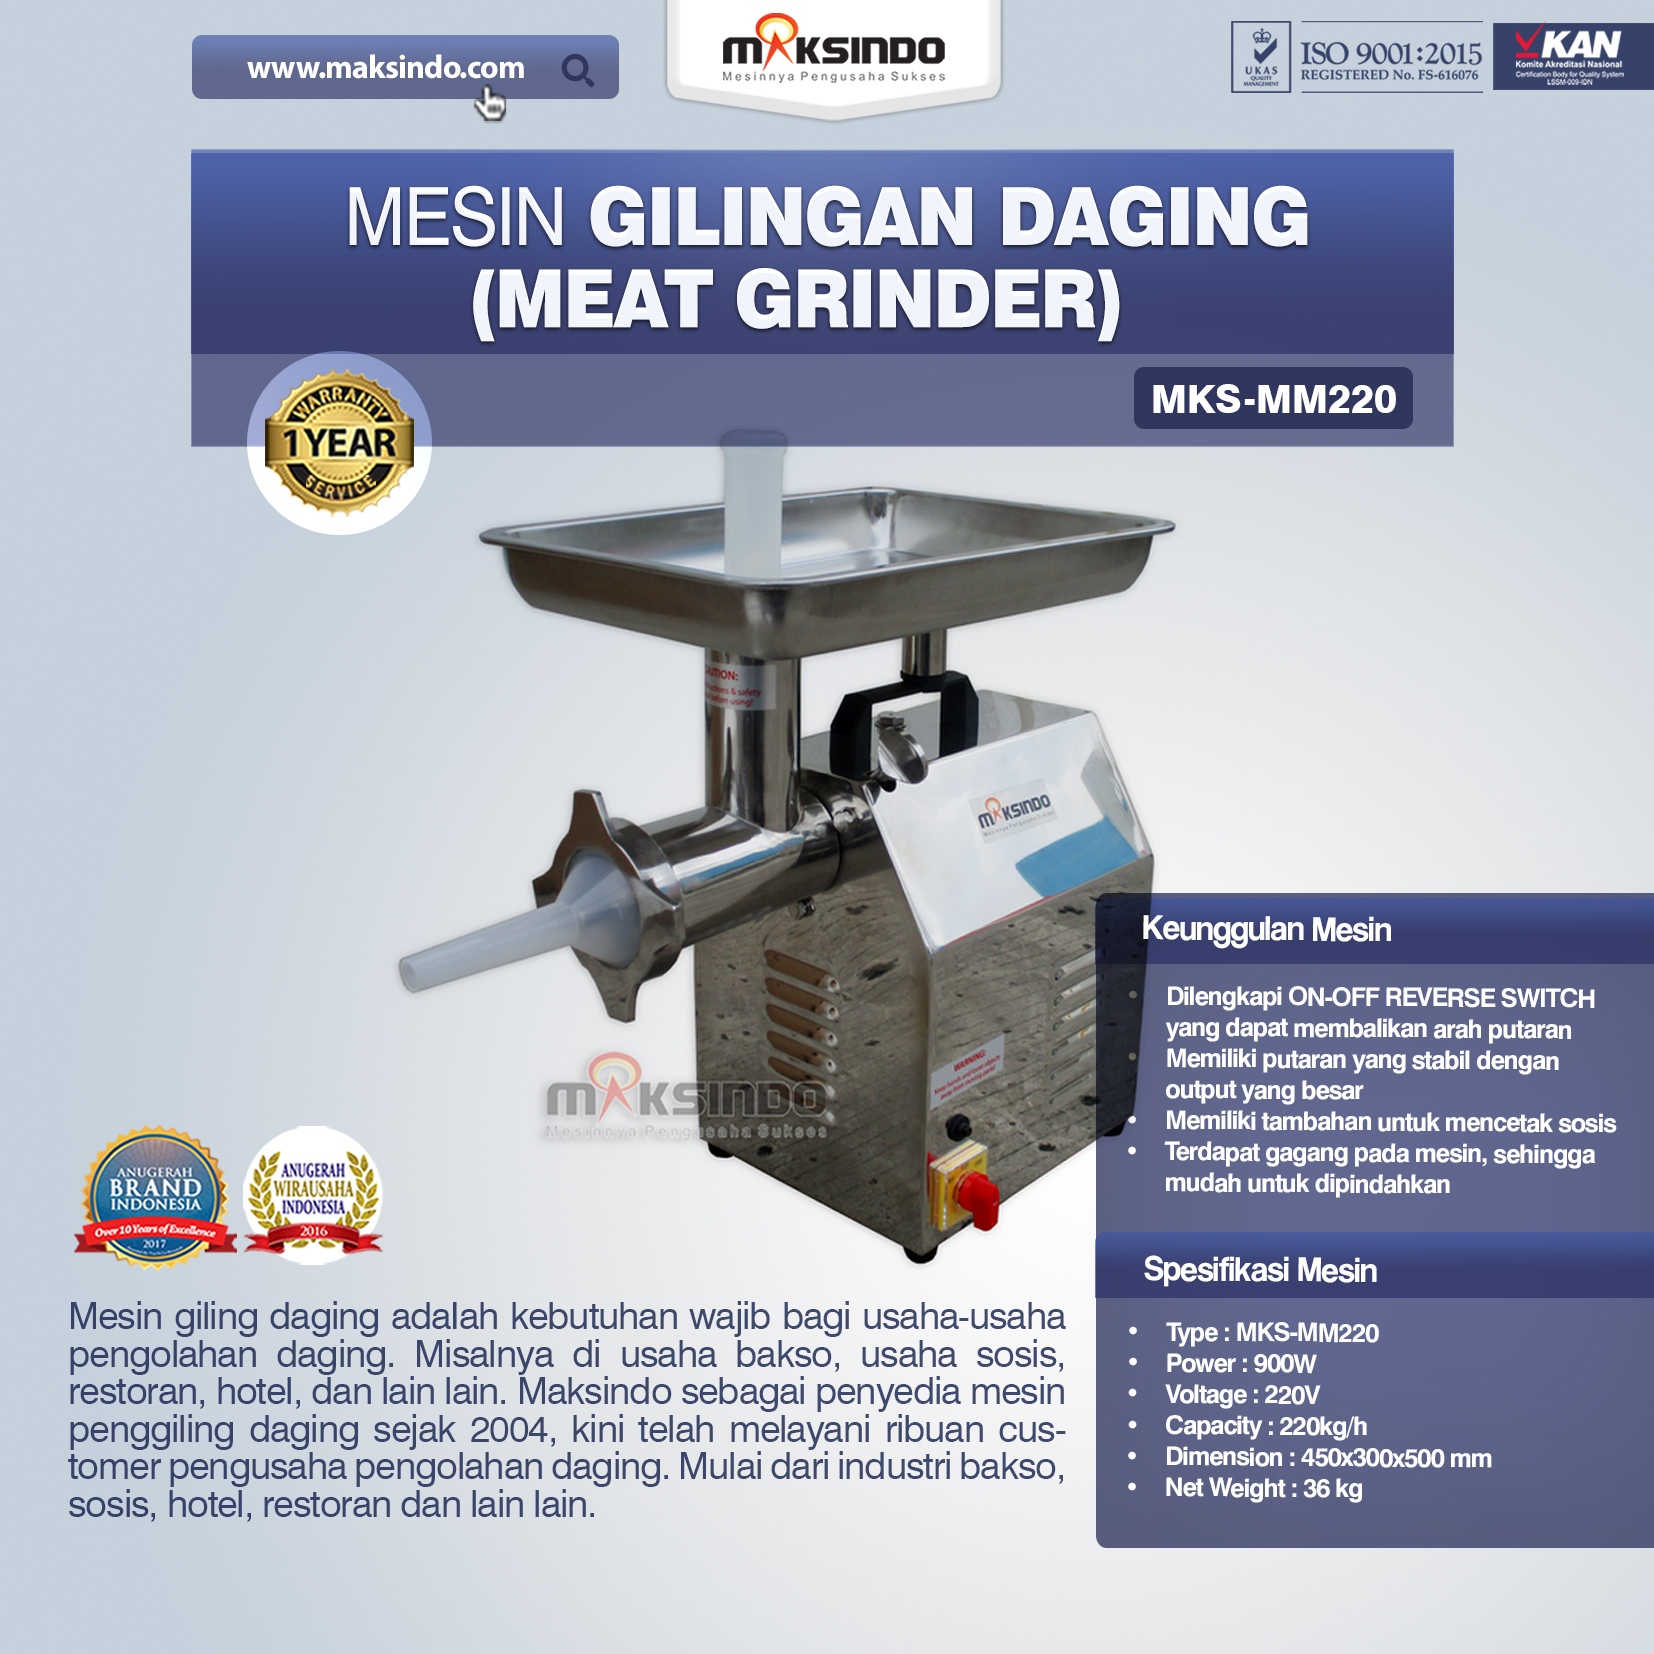 Mesin Giling Daging (Meat Grinder) MKS-MM220